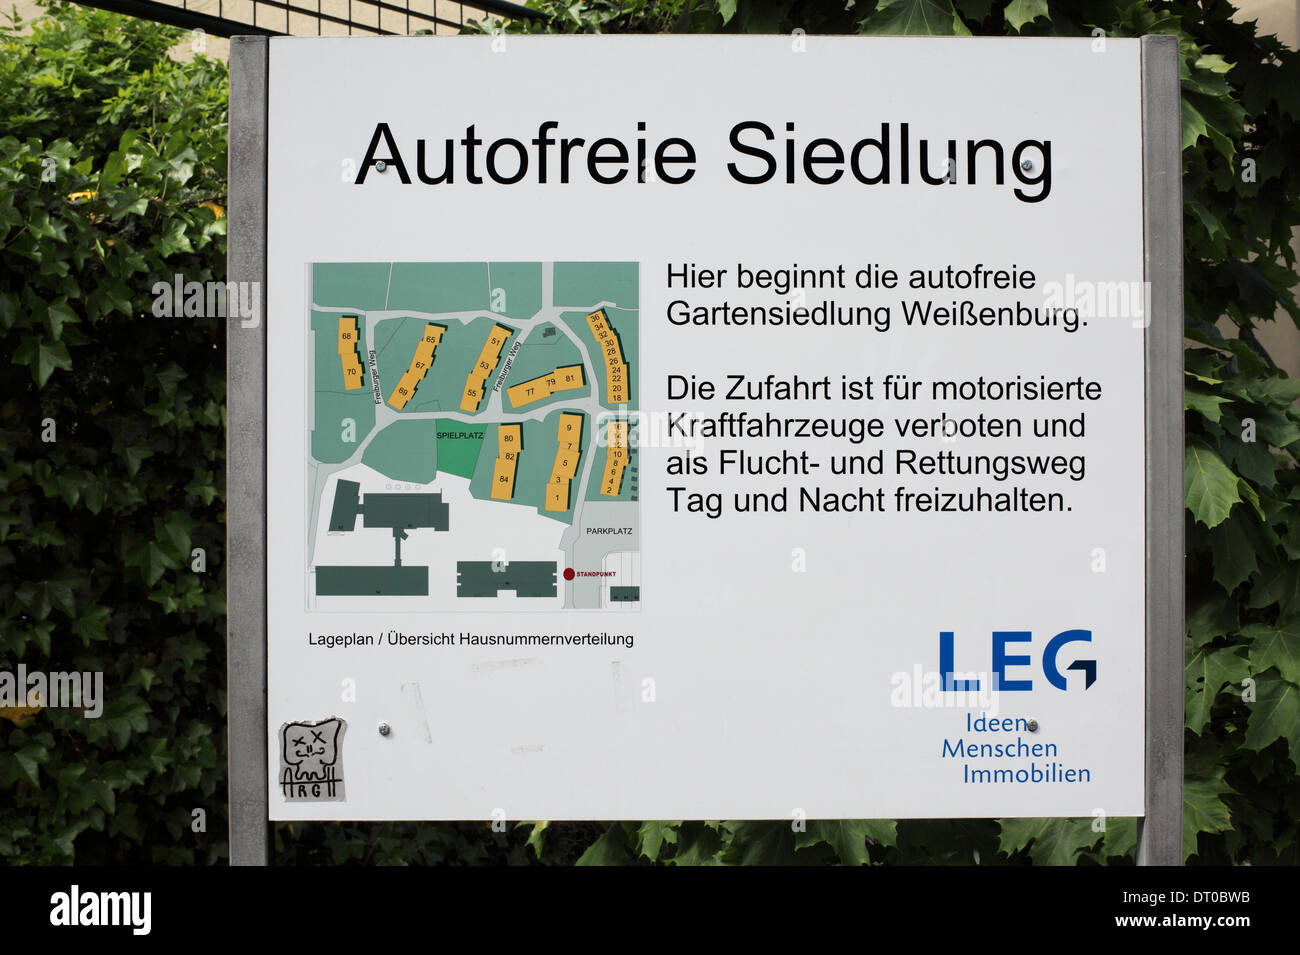 Un panneau à l'entrée d'Gartensiedlung Weissenburg, un développement du logement sans voiture à Münster, Allemagne. Banque D'Images